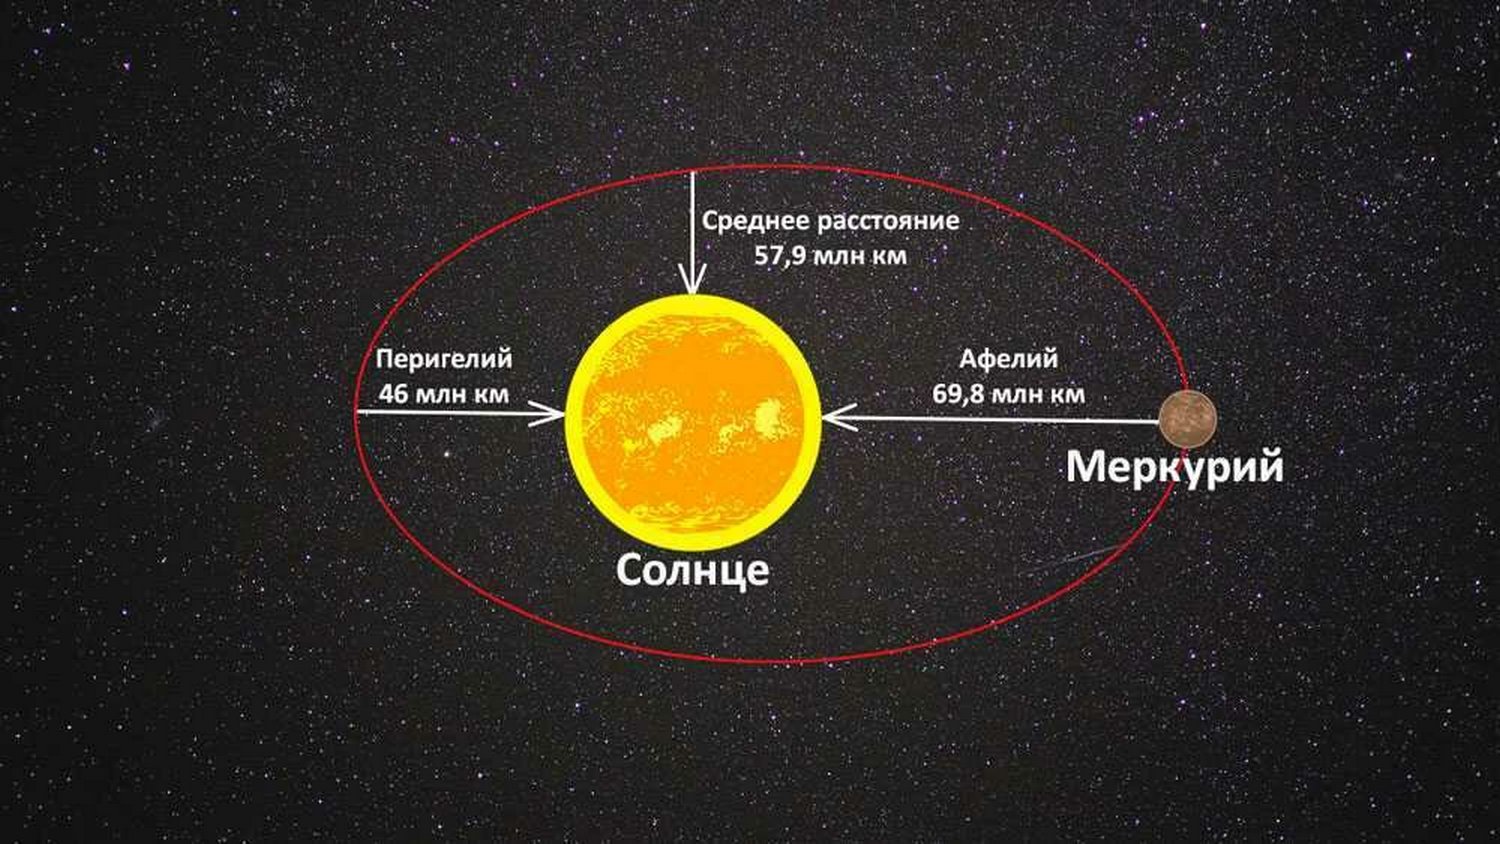 Вокруг насколько. Меркурий в афелии. Меркурий перигелий и афелий. Меркурий удаленность от солнца. Планета Меркурий удаленность от солнца.